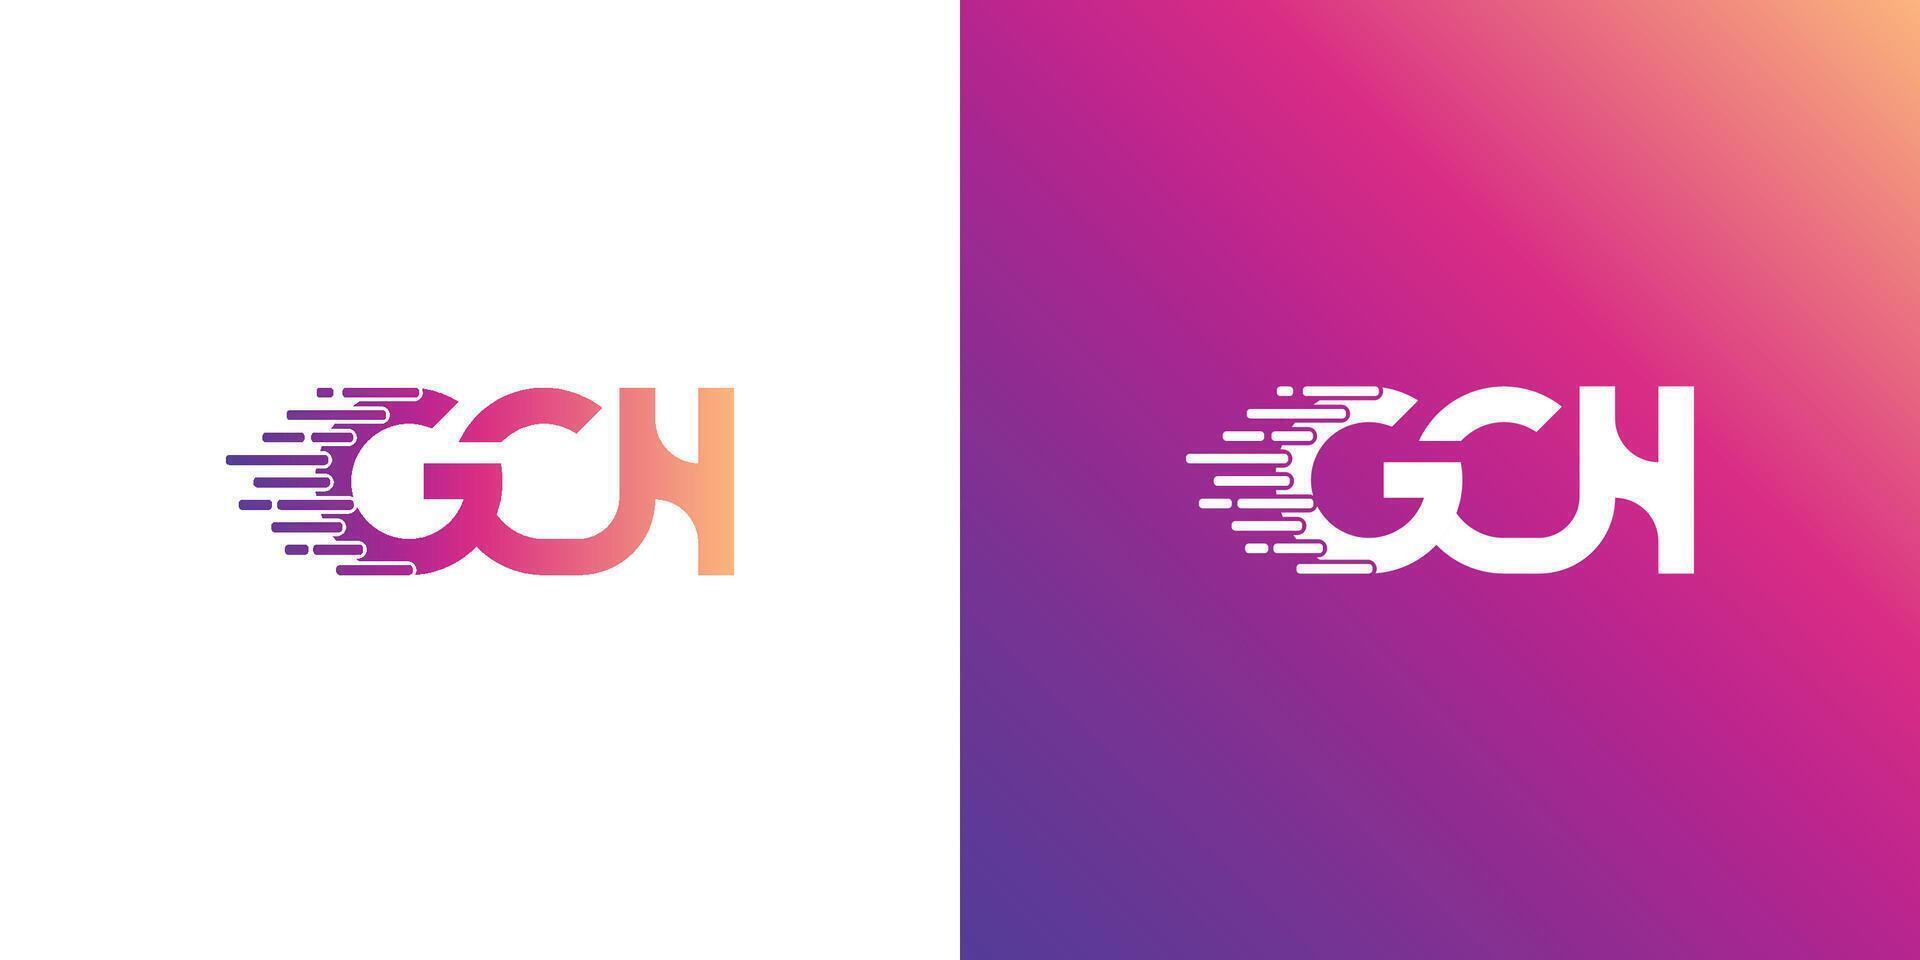 GCH letter creative modern logo design. GCH Letter Initial Logo Design Template Vector Illustration.